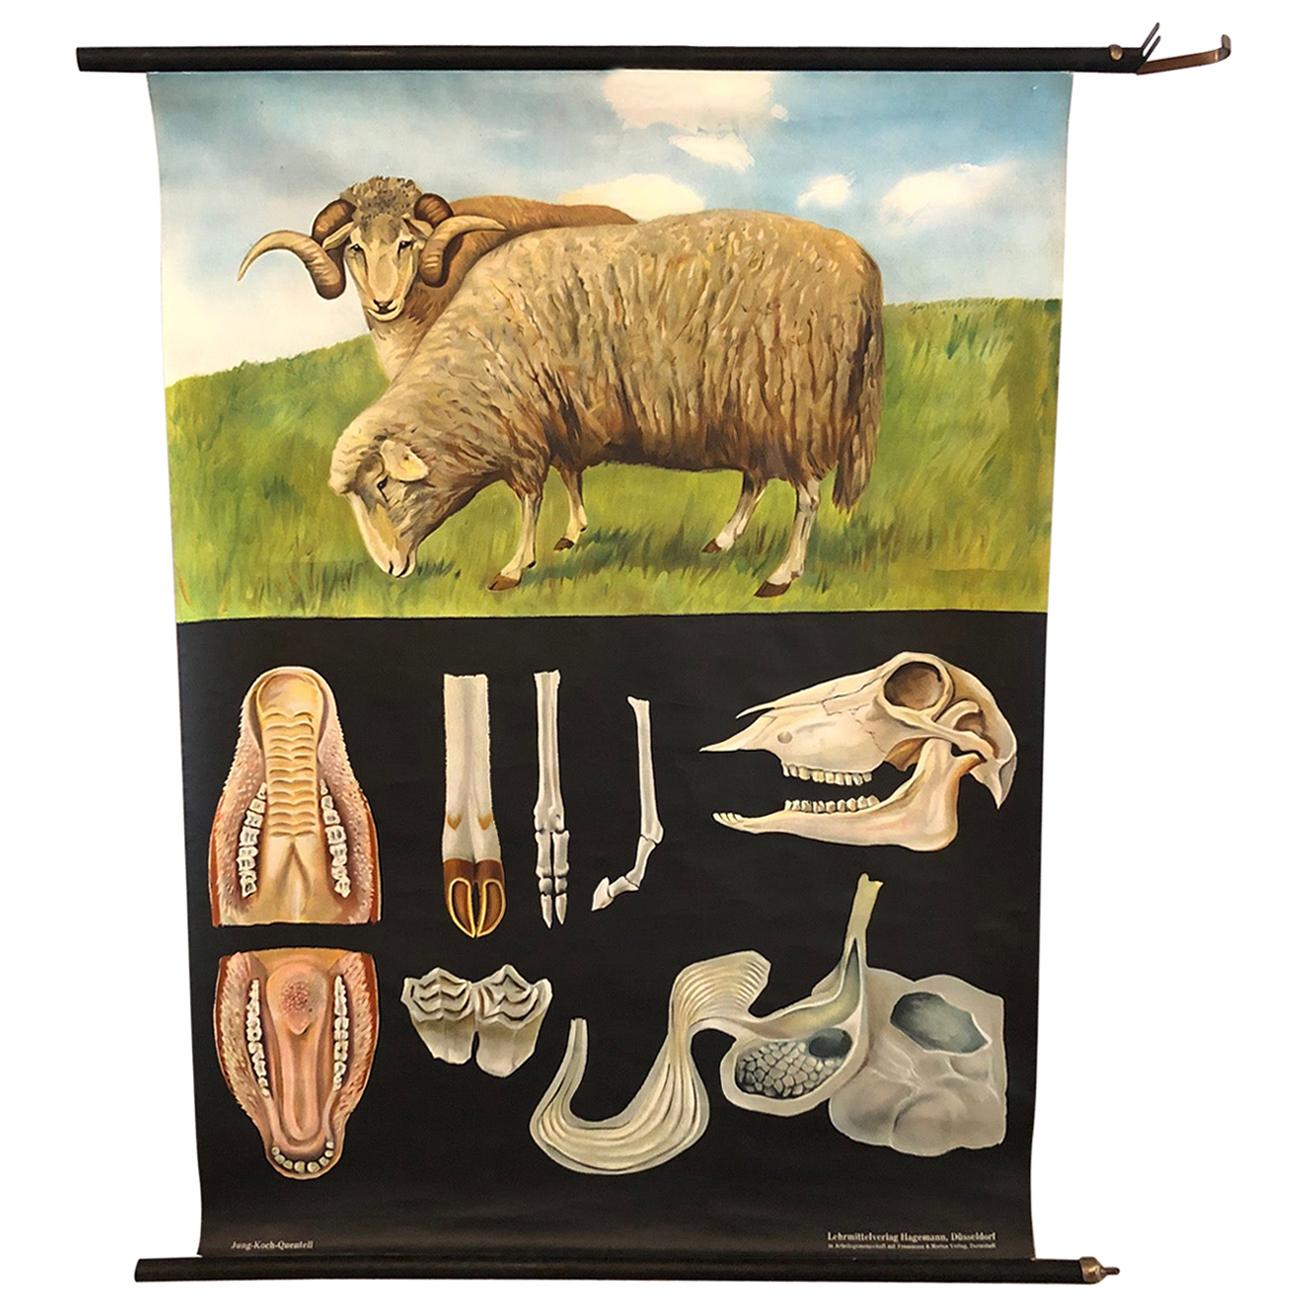 Jung-Koch-Quentell - Tableau d'anatomie zoologique de mouton éducatif